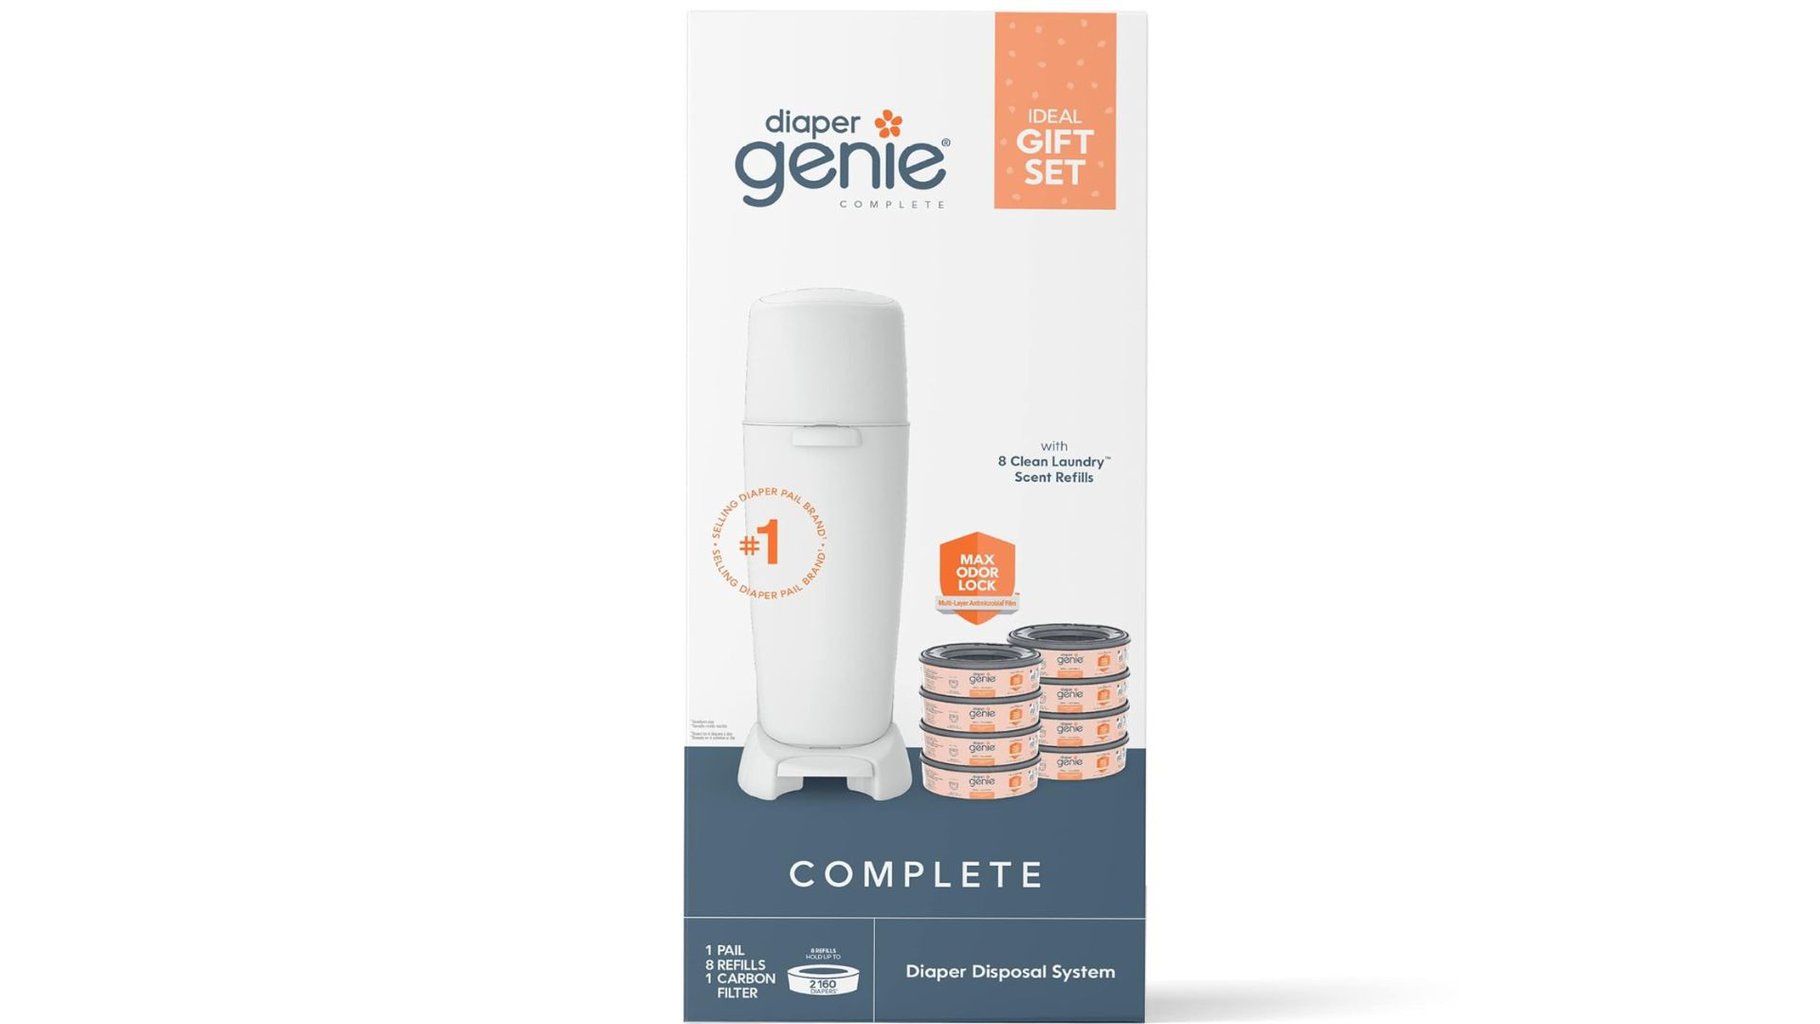 Baby registry essentials: Diaper Genie gift set 